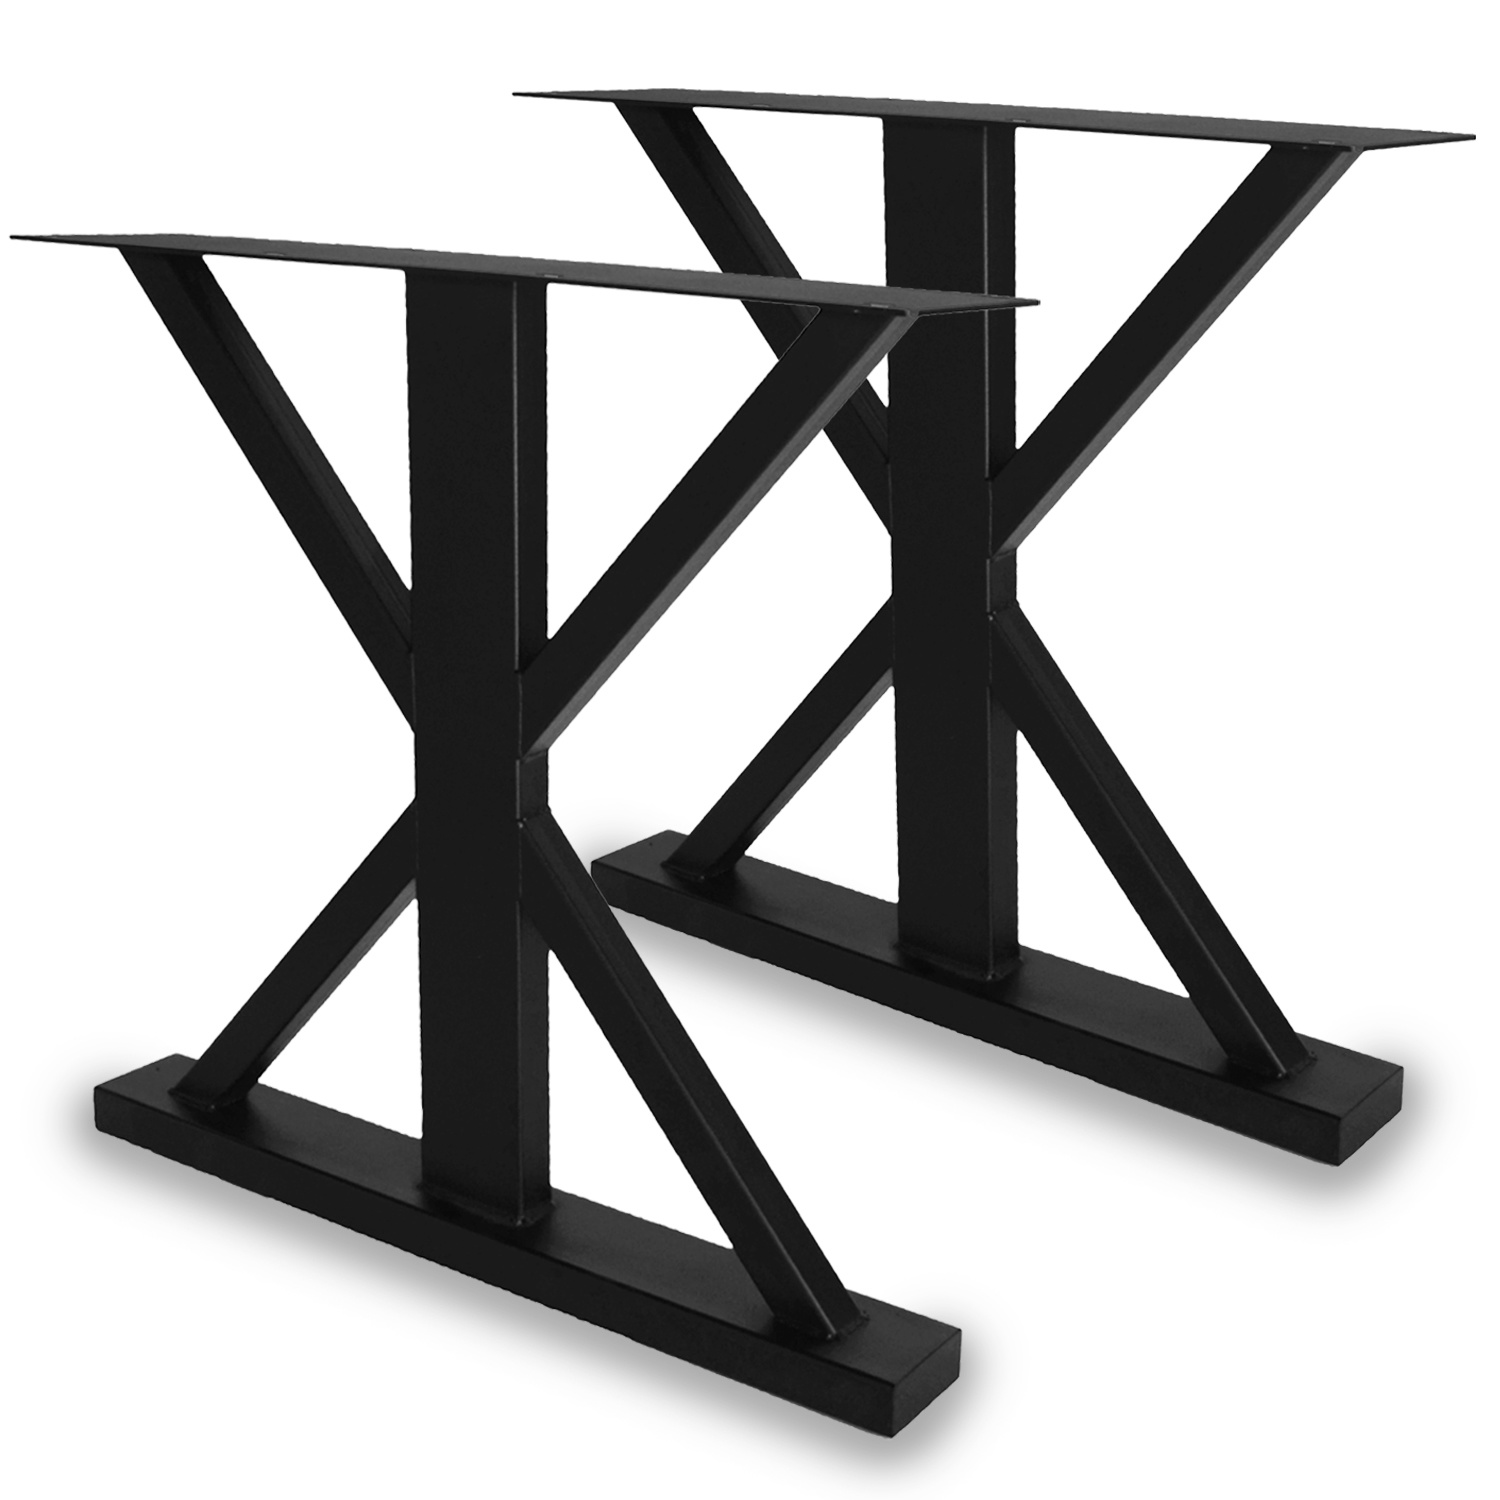  Stalen landelijke tafelpoten (SET) - 78 cm breed - 72 cm hoog - GEPOEDERCOAT  Zwart